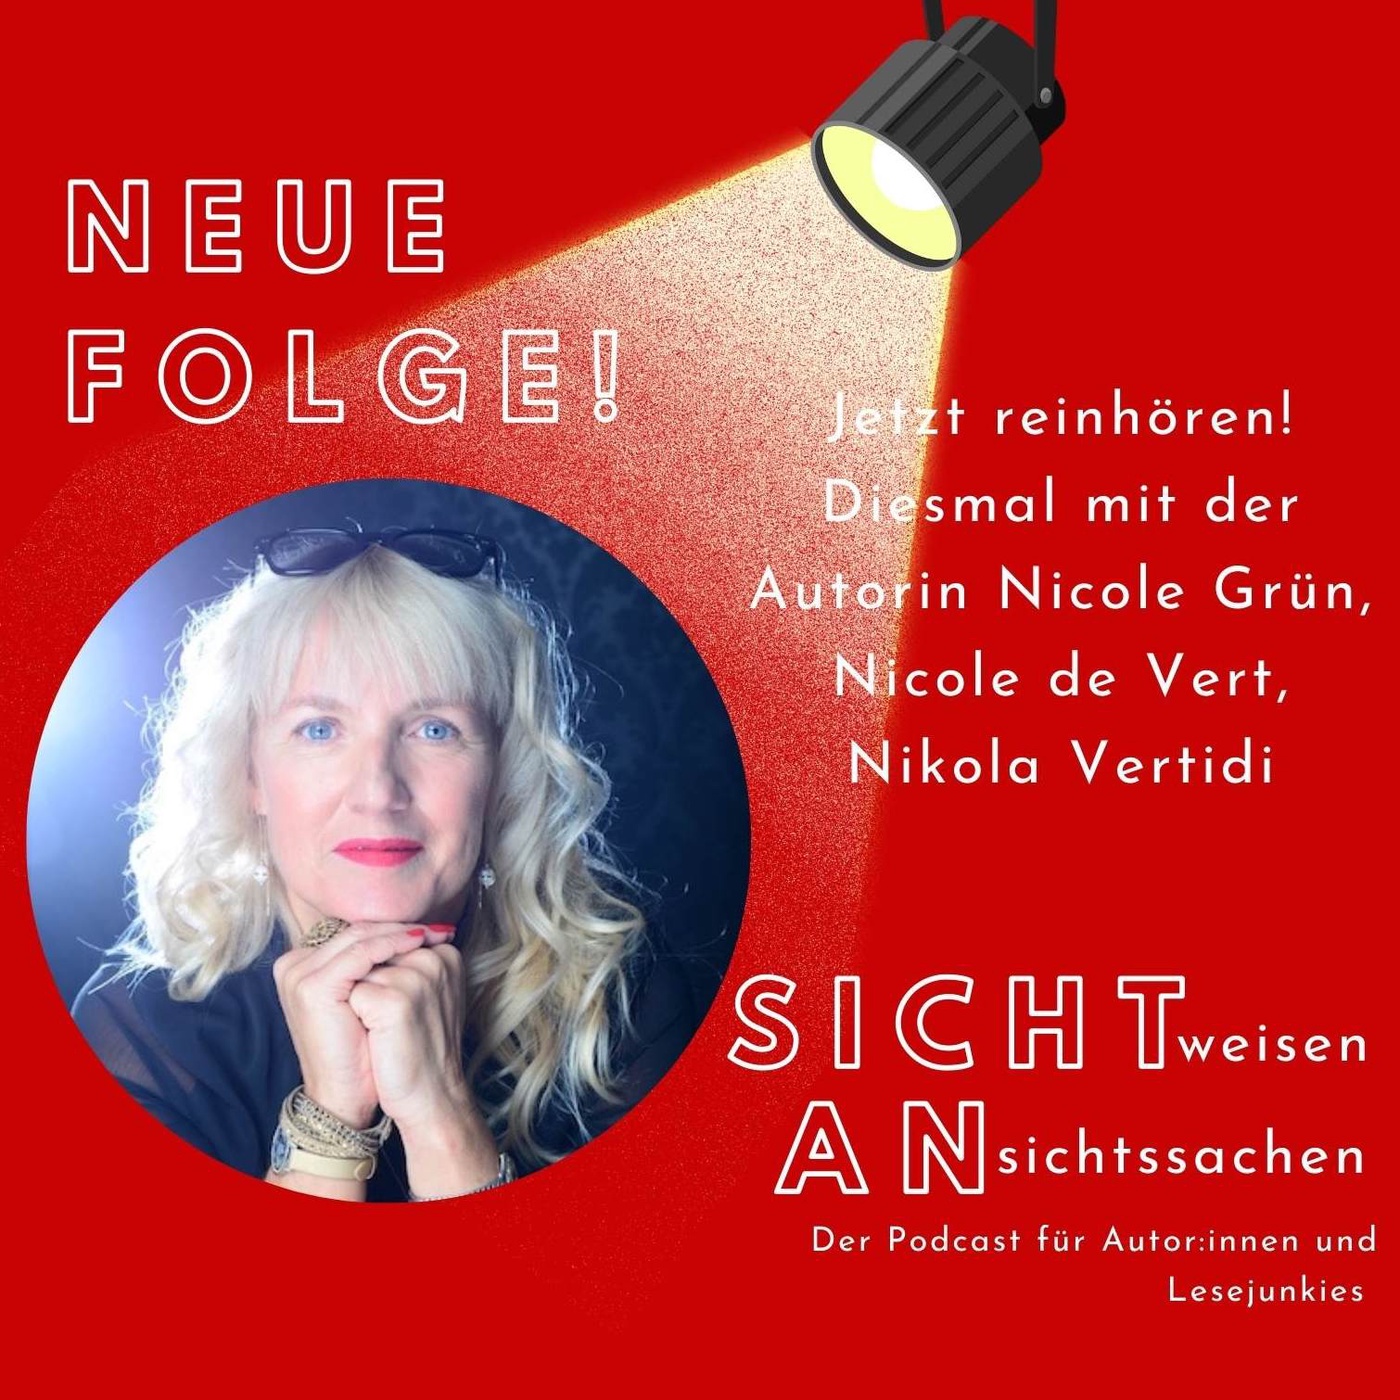 Autorinnengespräch mit Nicole de Vert und Nikola Vertidi